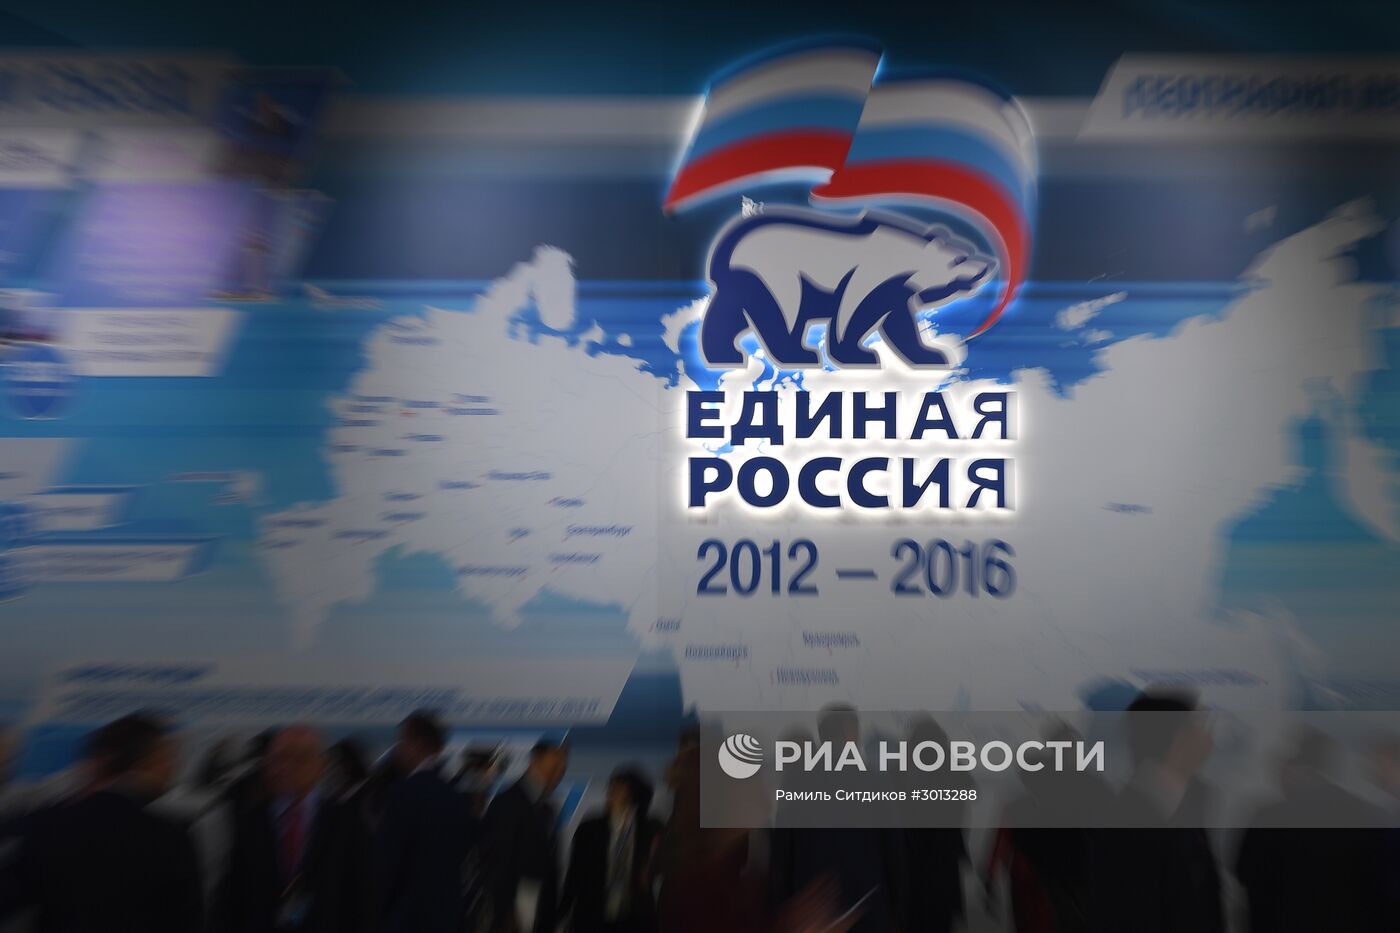 XVI Съезд политической партии "Единая Россия". День первый